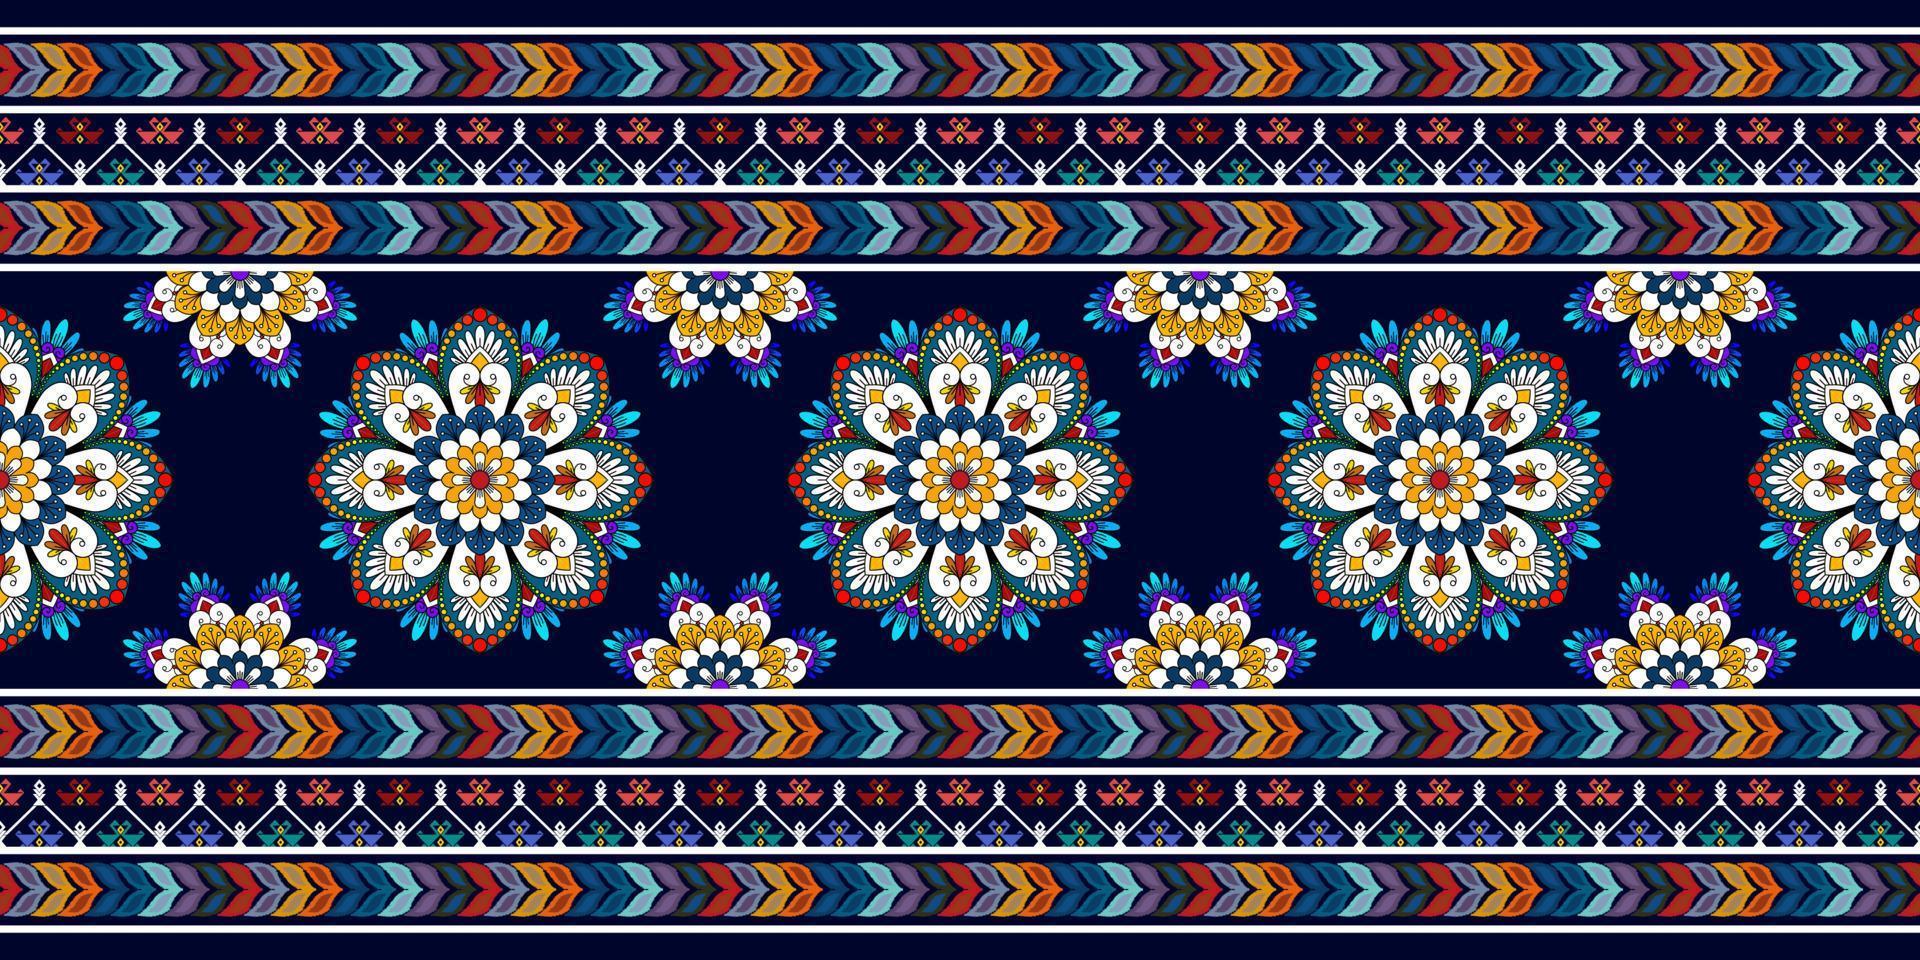 abstract geometrisch motief etnisch naadloos patroonontwerp. Azteekse stof tapijt mandala ornamenten textiel decoraties behang. tribal boho inheemse etnische turkije traditionele borduurwerk vector background